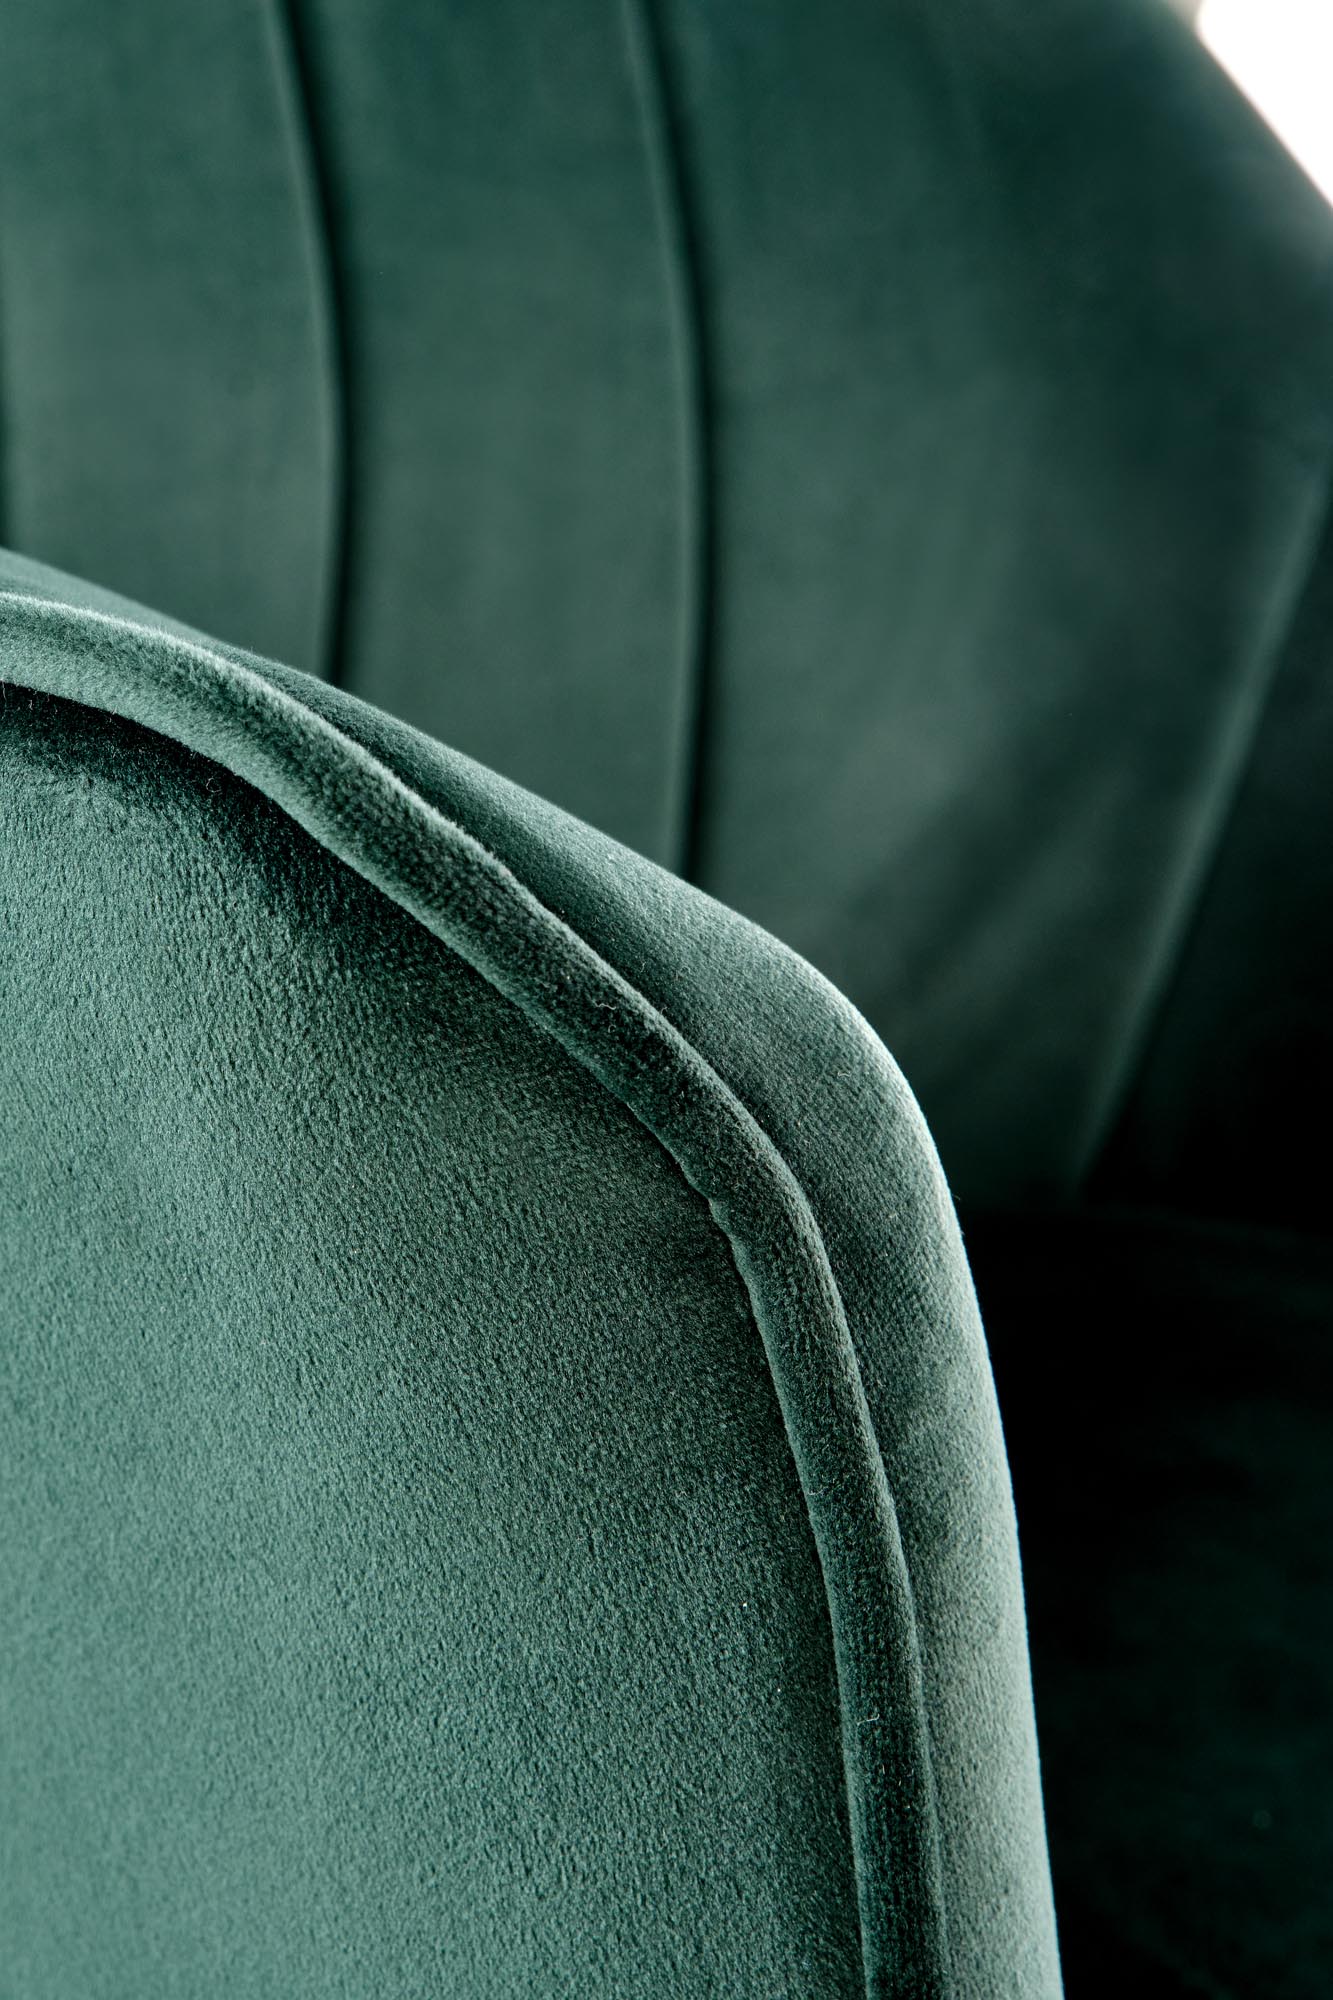 K468 jedálenská stolička tmavo zelená